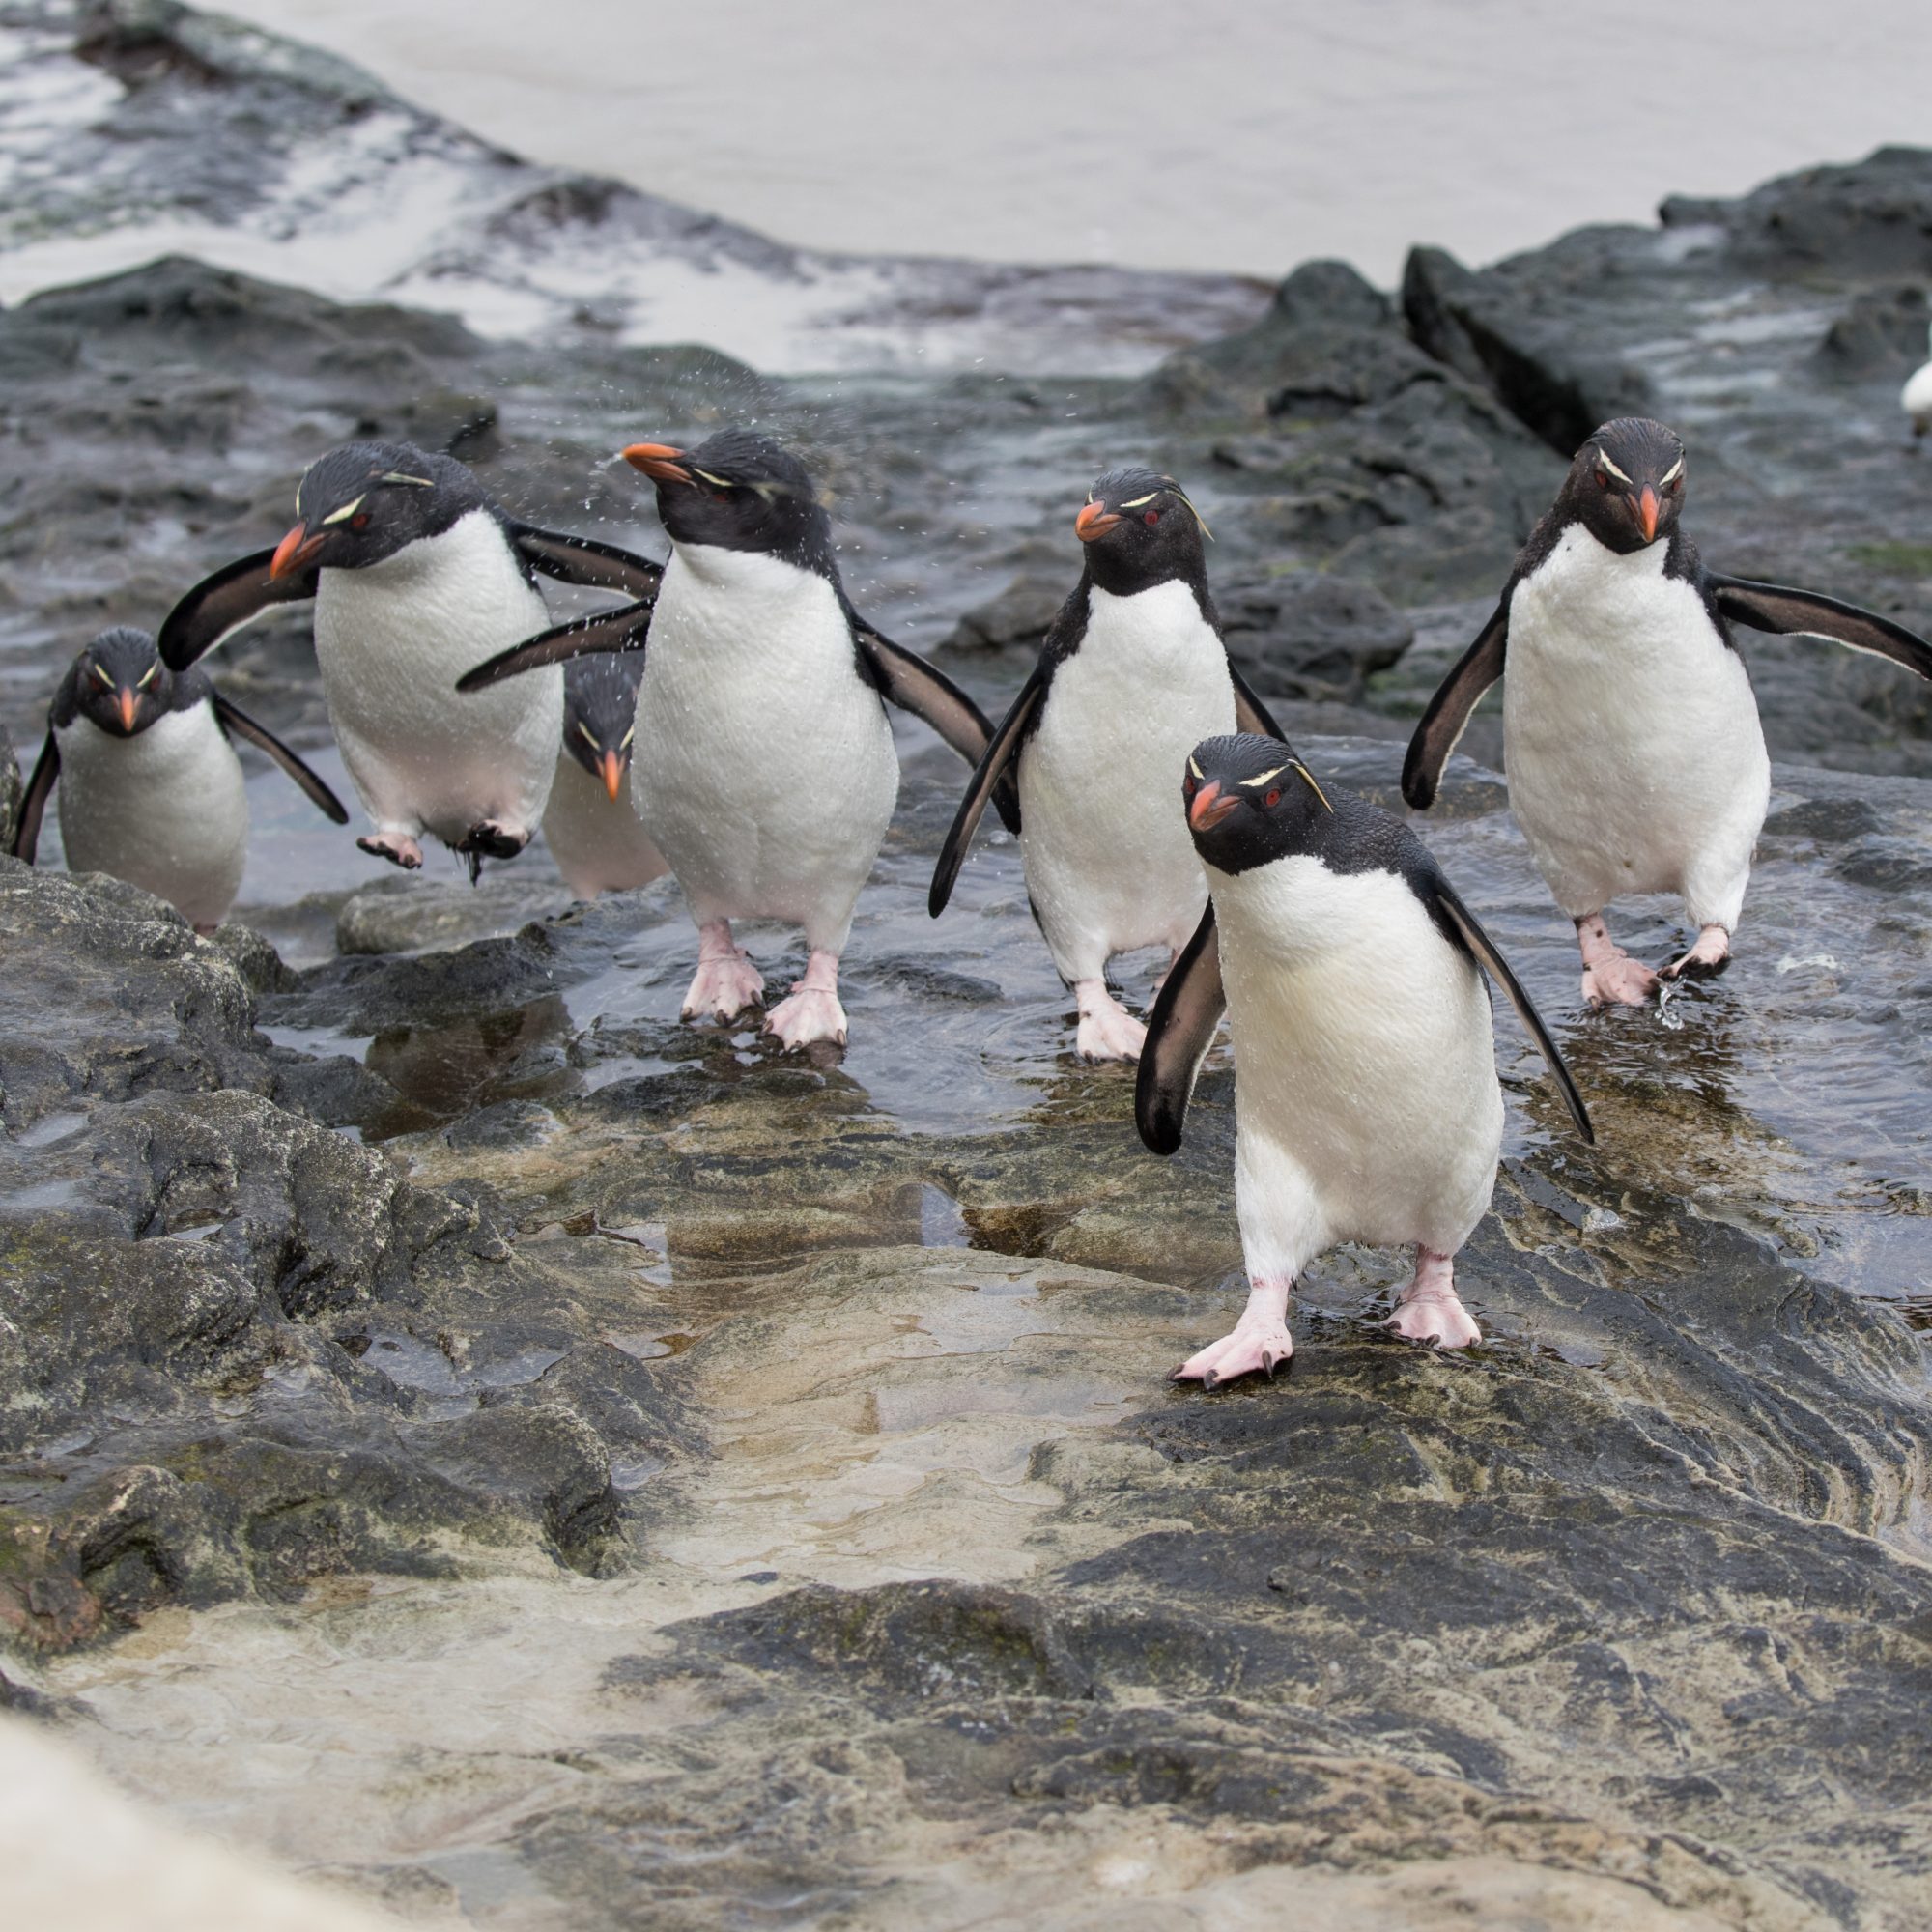 Rockhopper Penguins in the surf – Falkland Islands, 2016